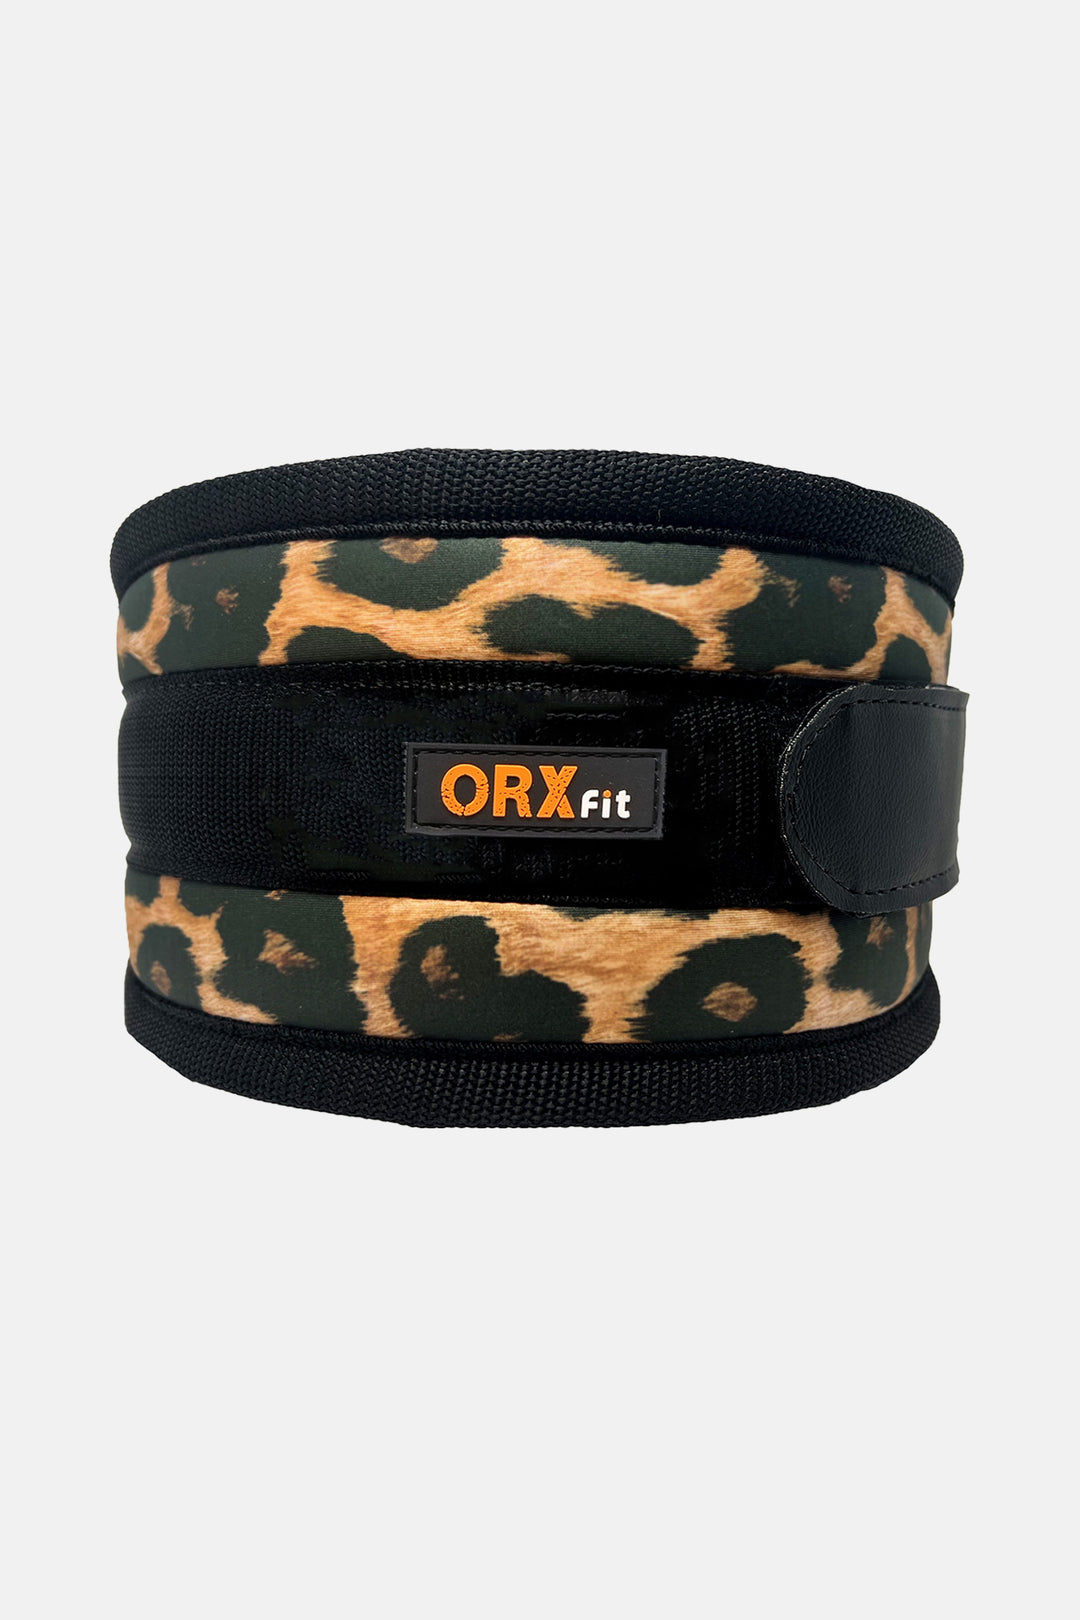 Cinturón ORX